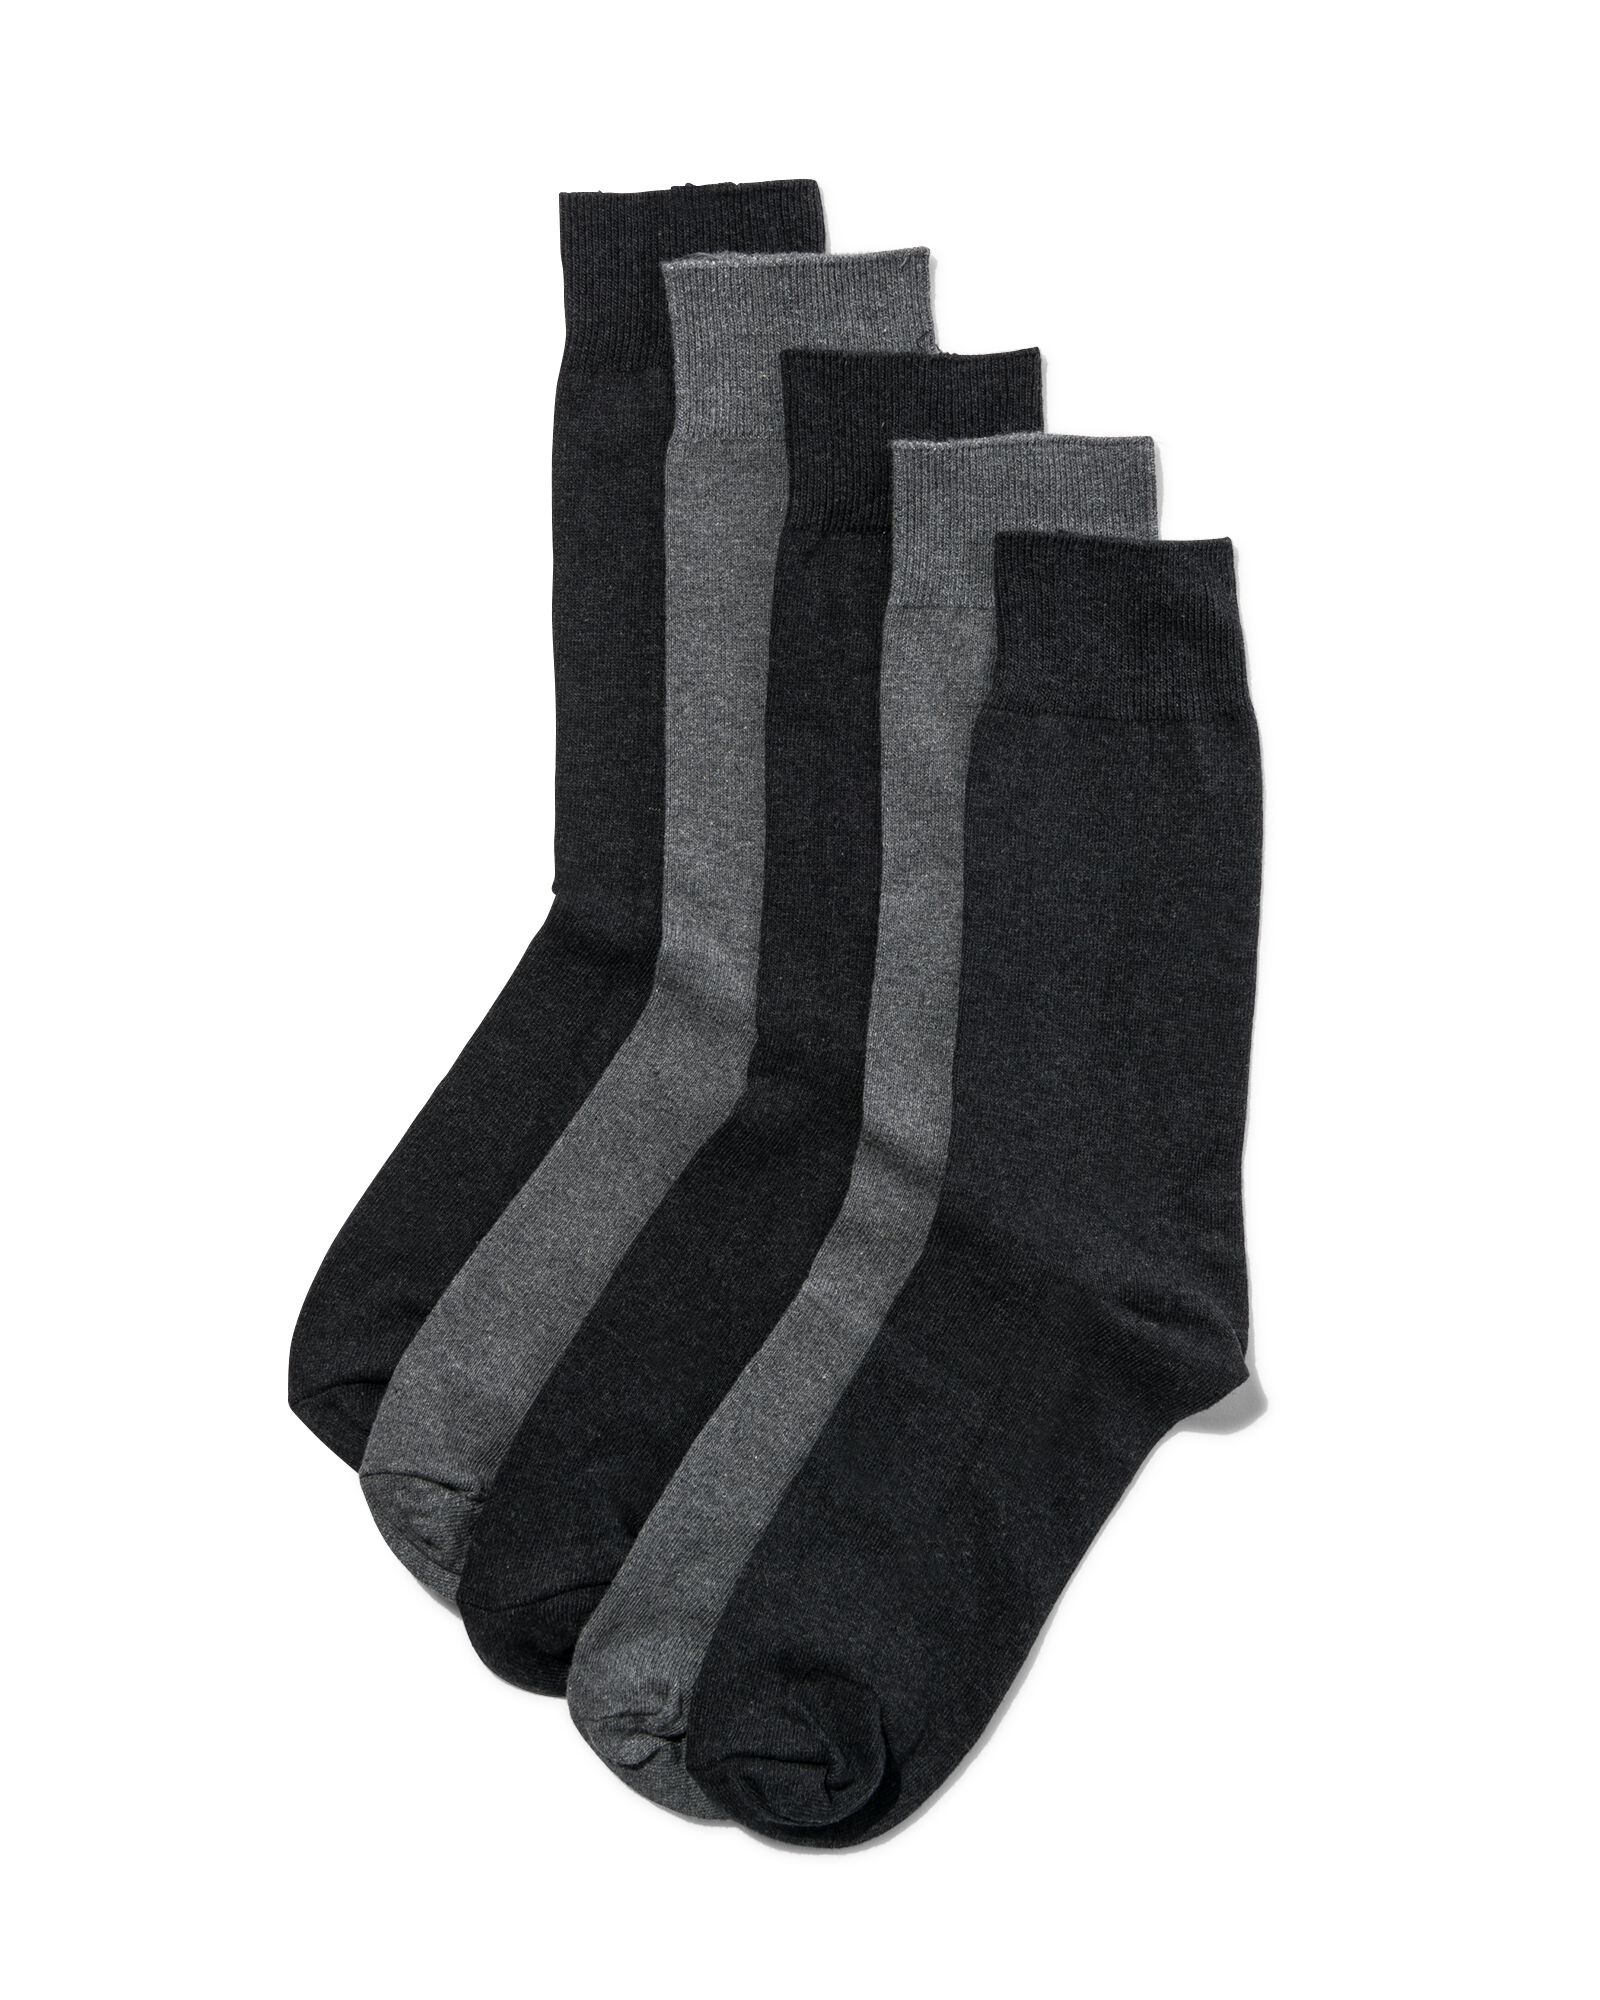 Chaussettes chinées multicolores Garçon (lot de 5) Taille 35/38